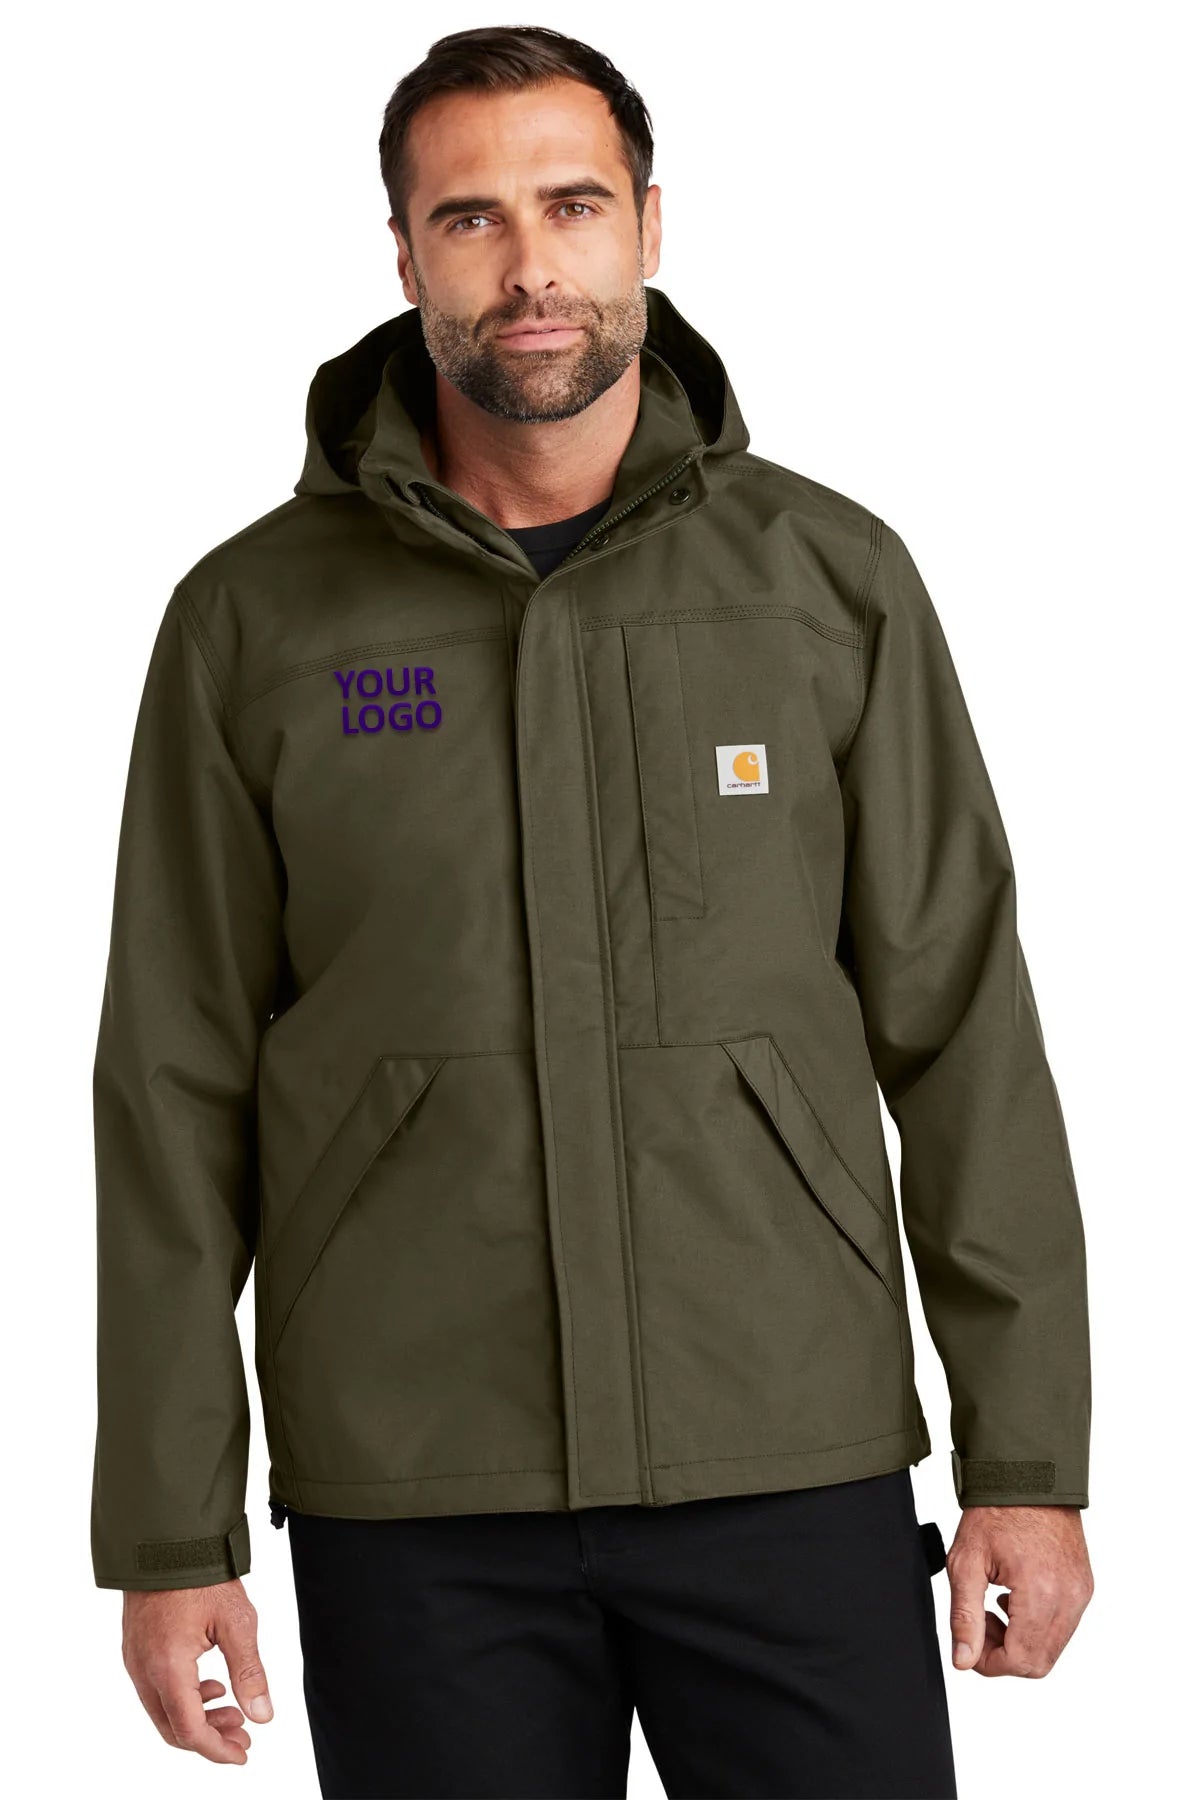 Carhartt Moss CT104670 company jackets with logo